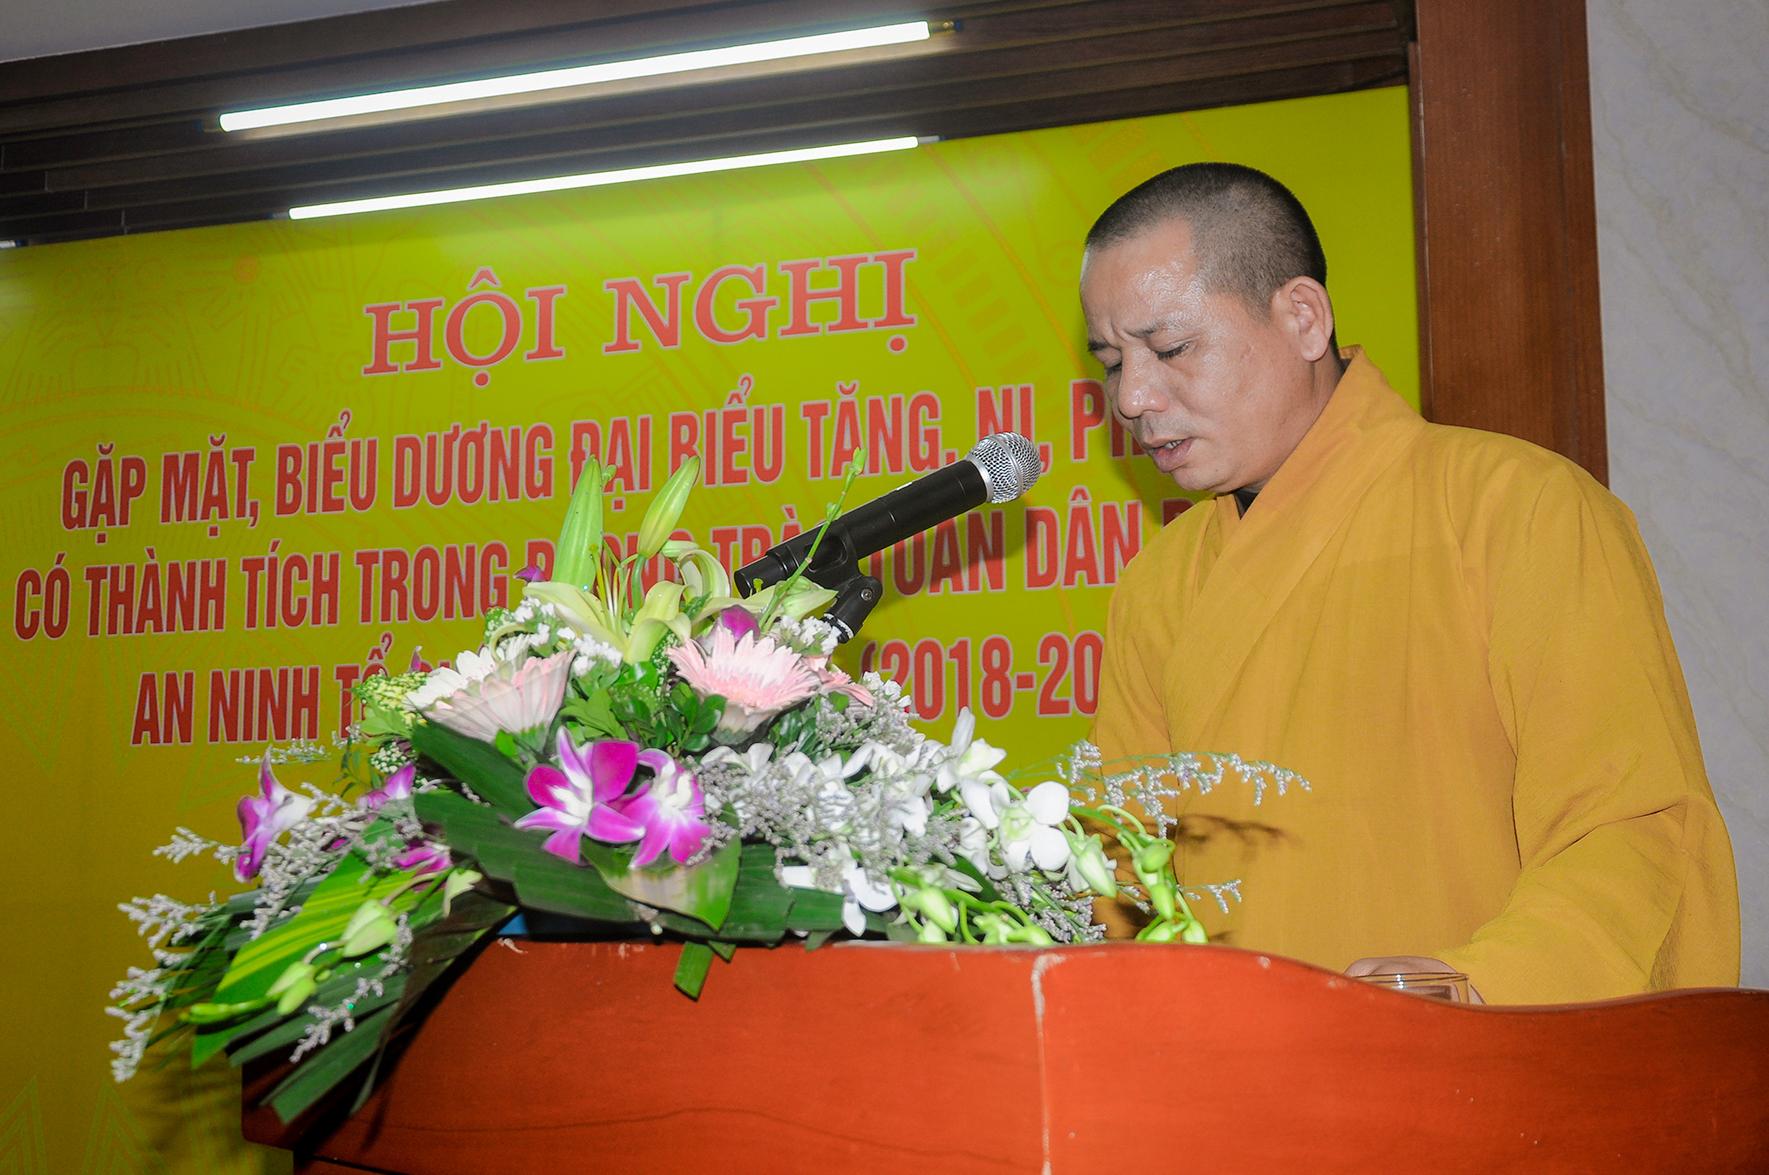 Phật giáo thị xã Đông Triều với công tác hoằng pháp và hướng dẫn Phật tử, vận động chức sắc tín đồ đạo Phật giáo phát huy tinh thần tự quản về an ninh, trật tự tại các cơ sở thờ tự Phật giáo 